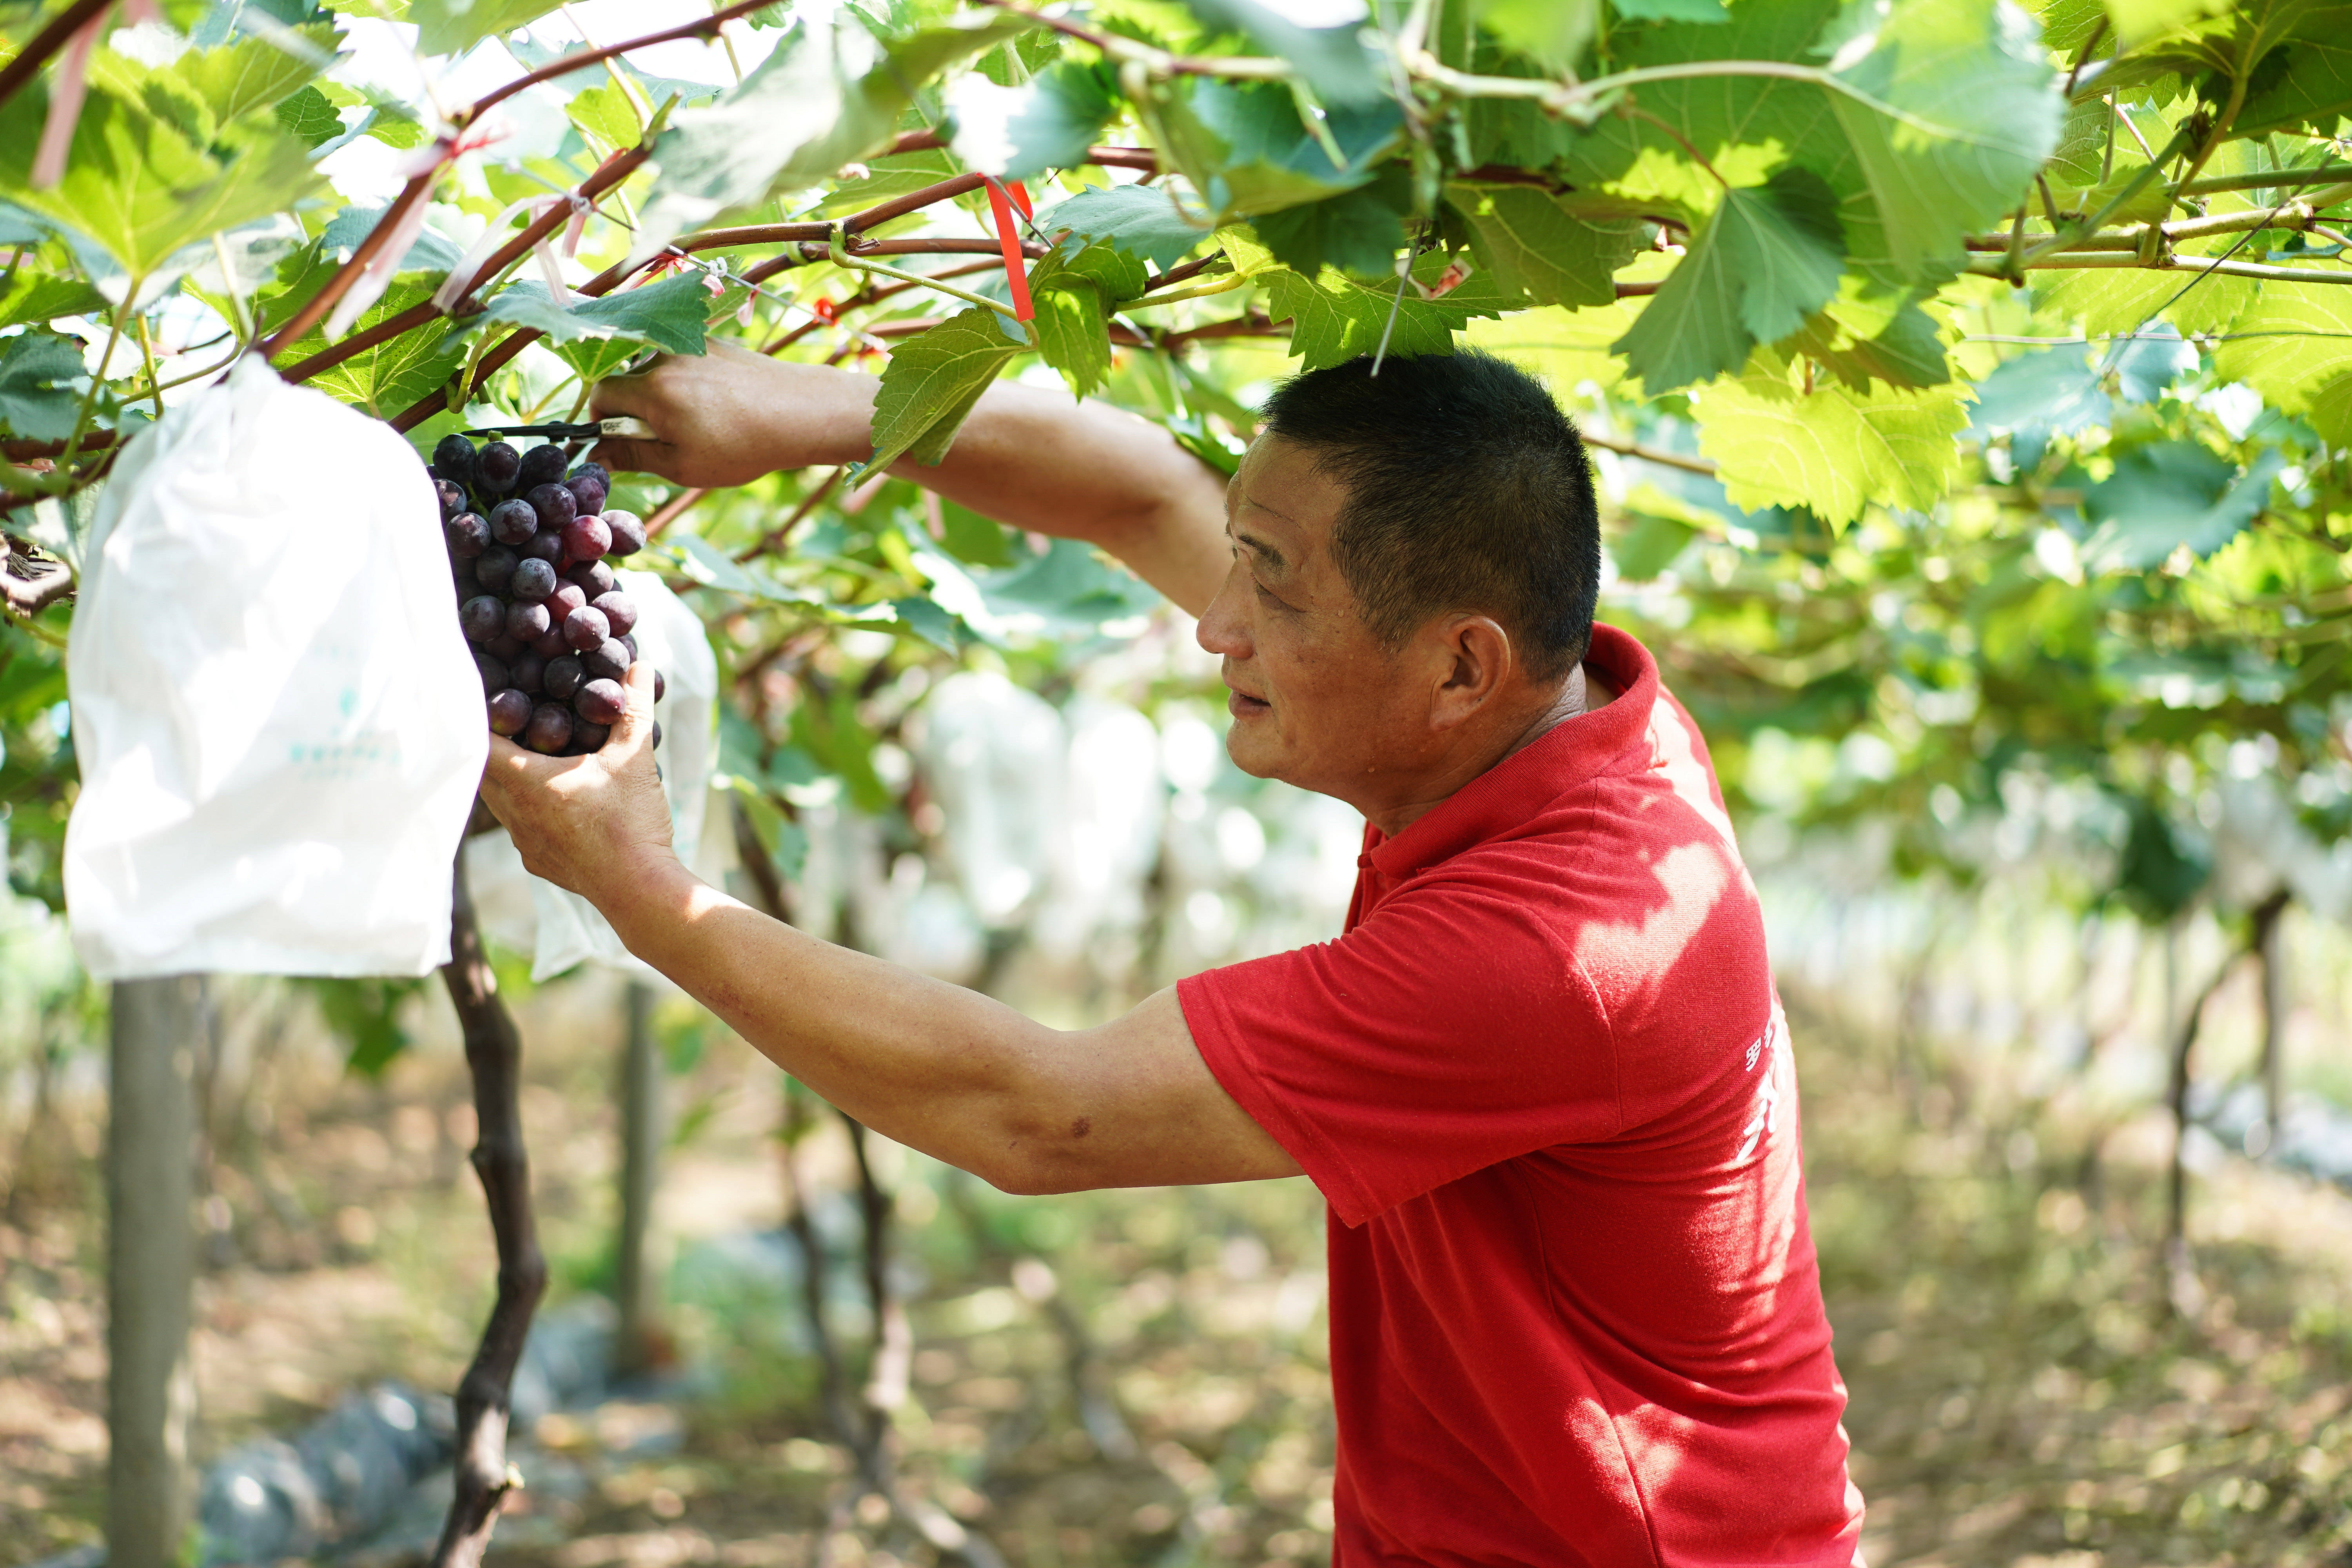 7月14日,靖江市城南办事处中桥村果农陈履平收获成熟的葡萄